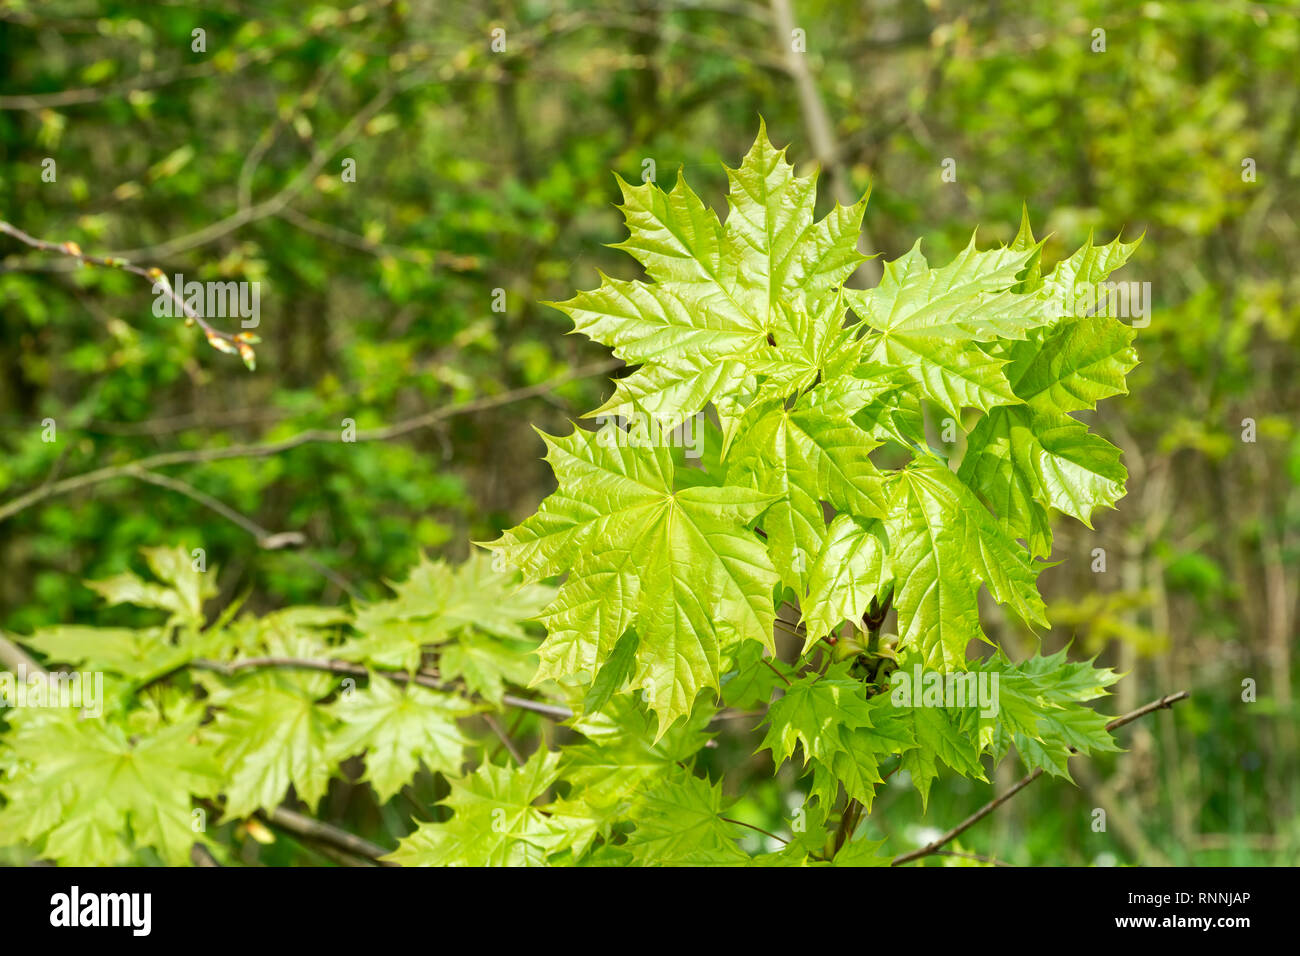 Frais de jeunes feuilles d'érable (Acer platanoides) en forêt au printemps. Les feuilles sont mis en lumière par le soleil. Fond vert naturel. Focus sélectif. Banque D'Images